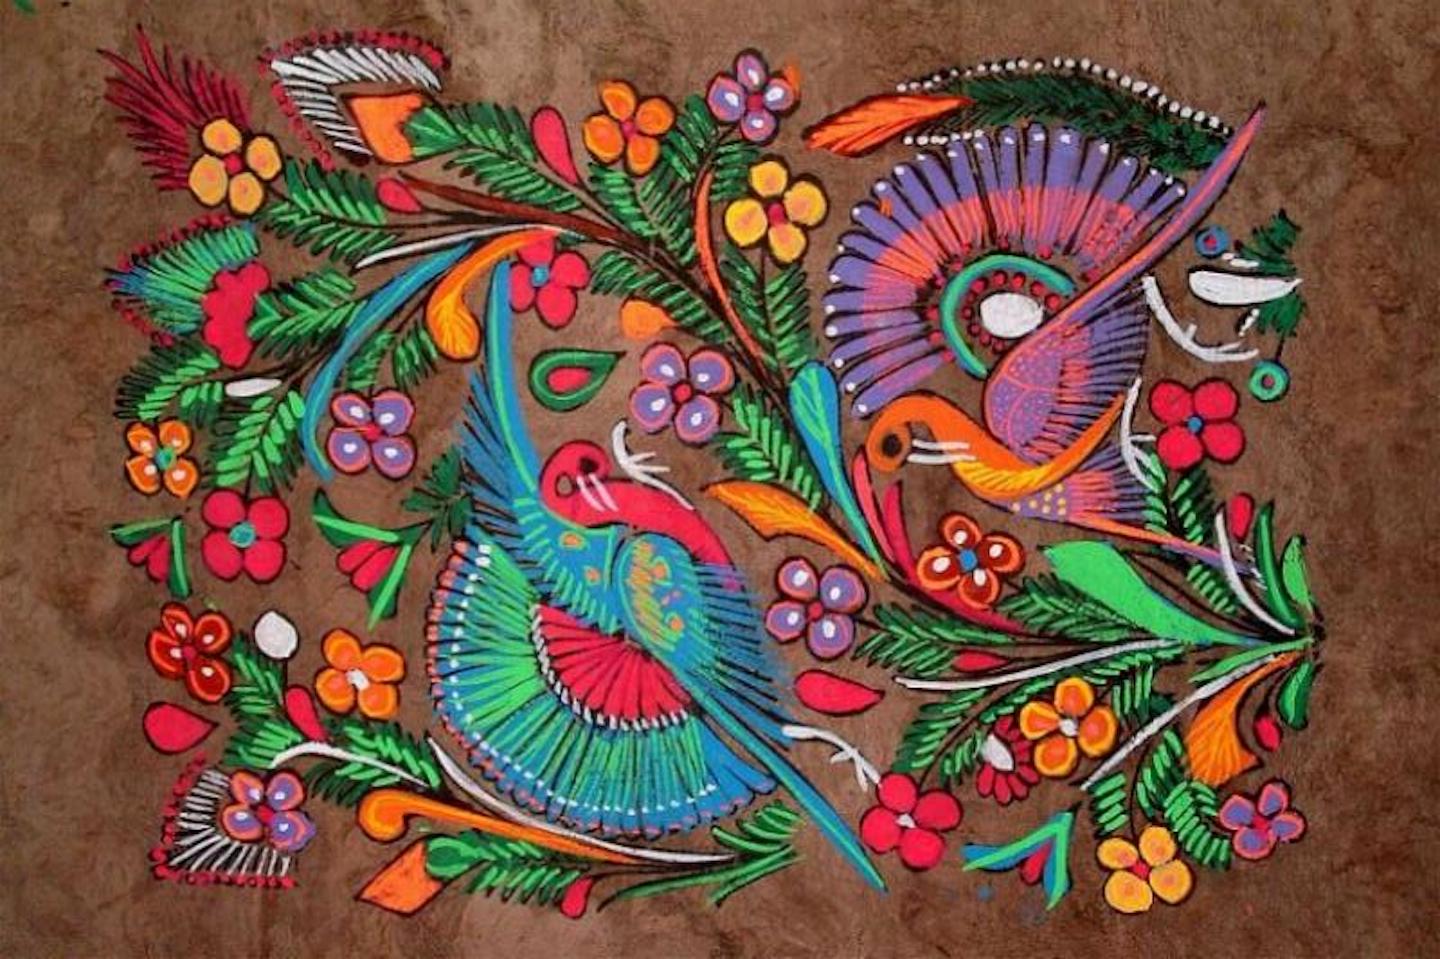 Pájaros, flores y florituras pintados en colores vivos (rojo, azul, verde, naranja, amarillo, morado) sobre un fondo marrón.